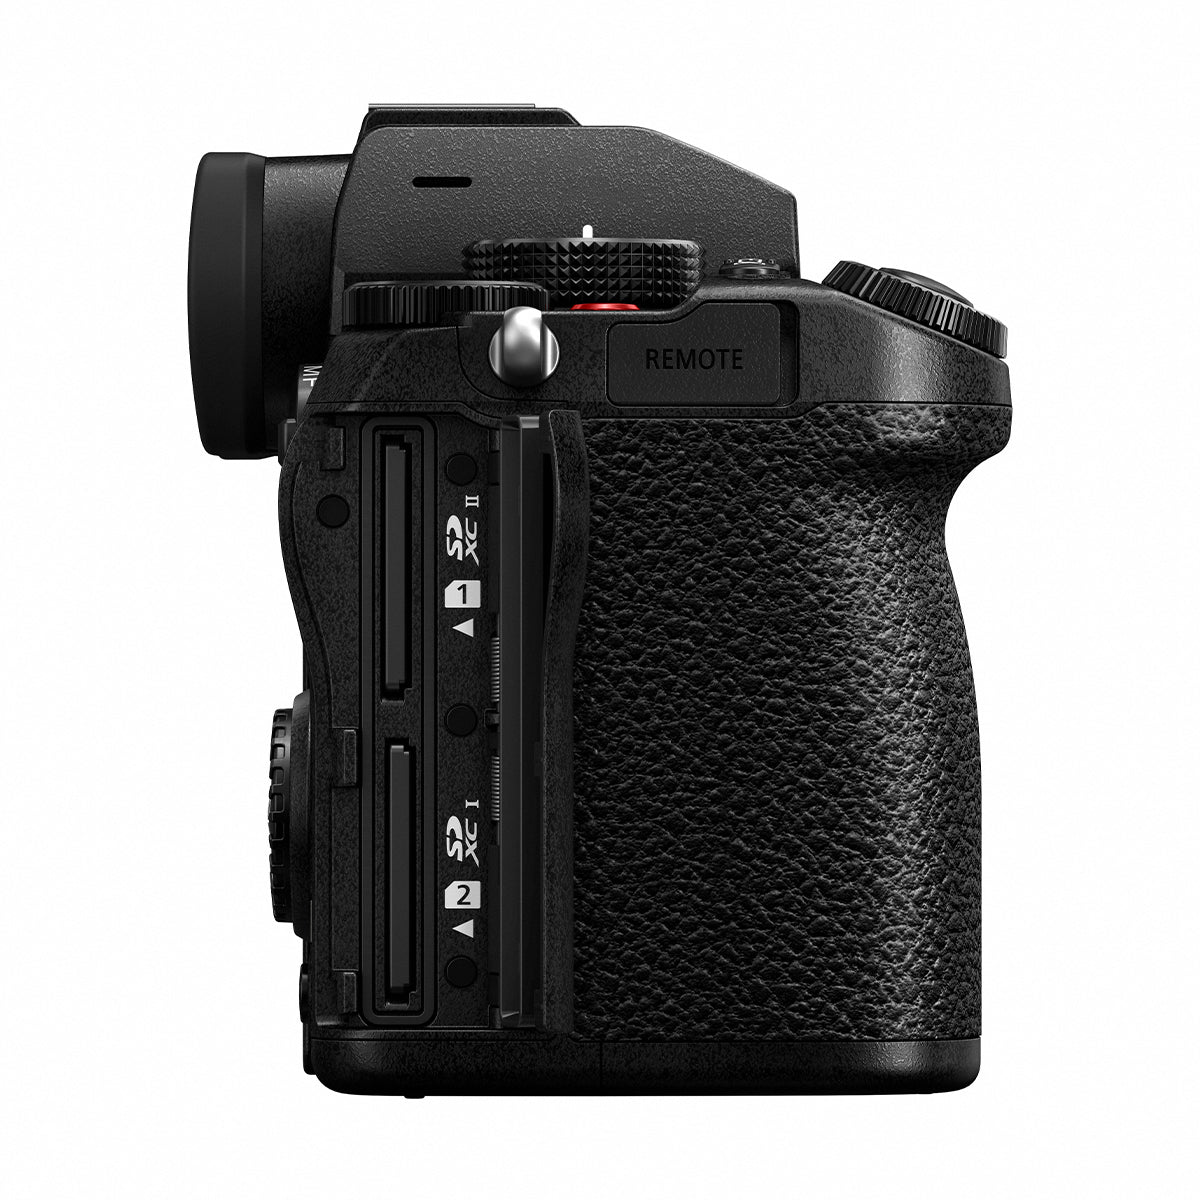 Panasonic Lumix S5 Full Frame Mirrorless Camera Body